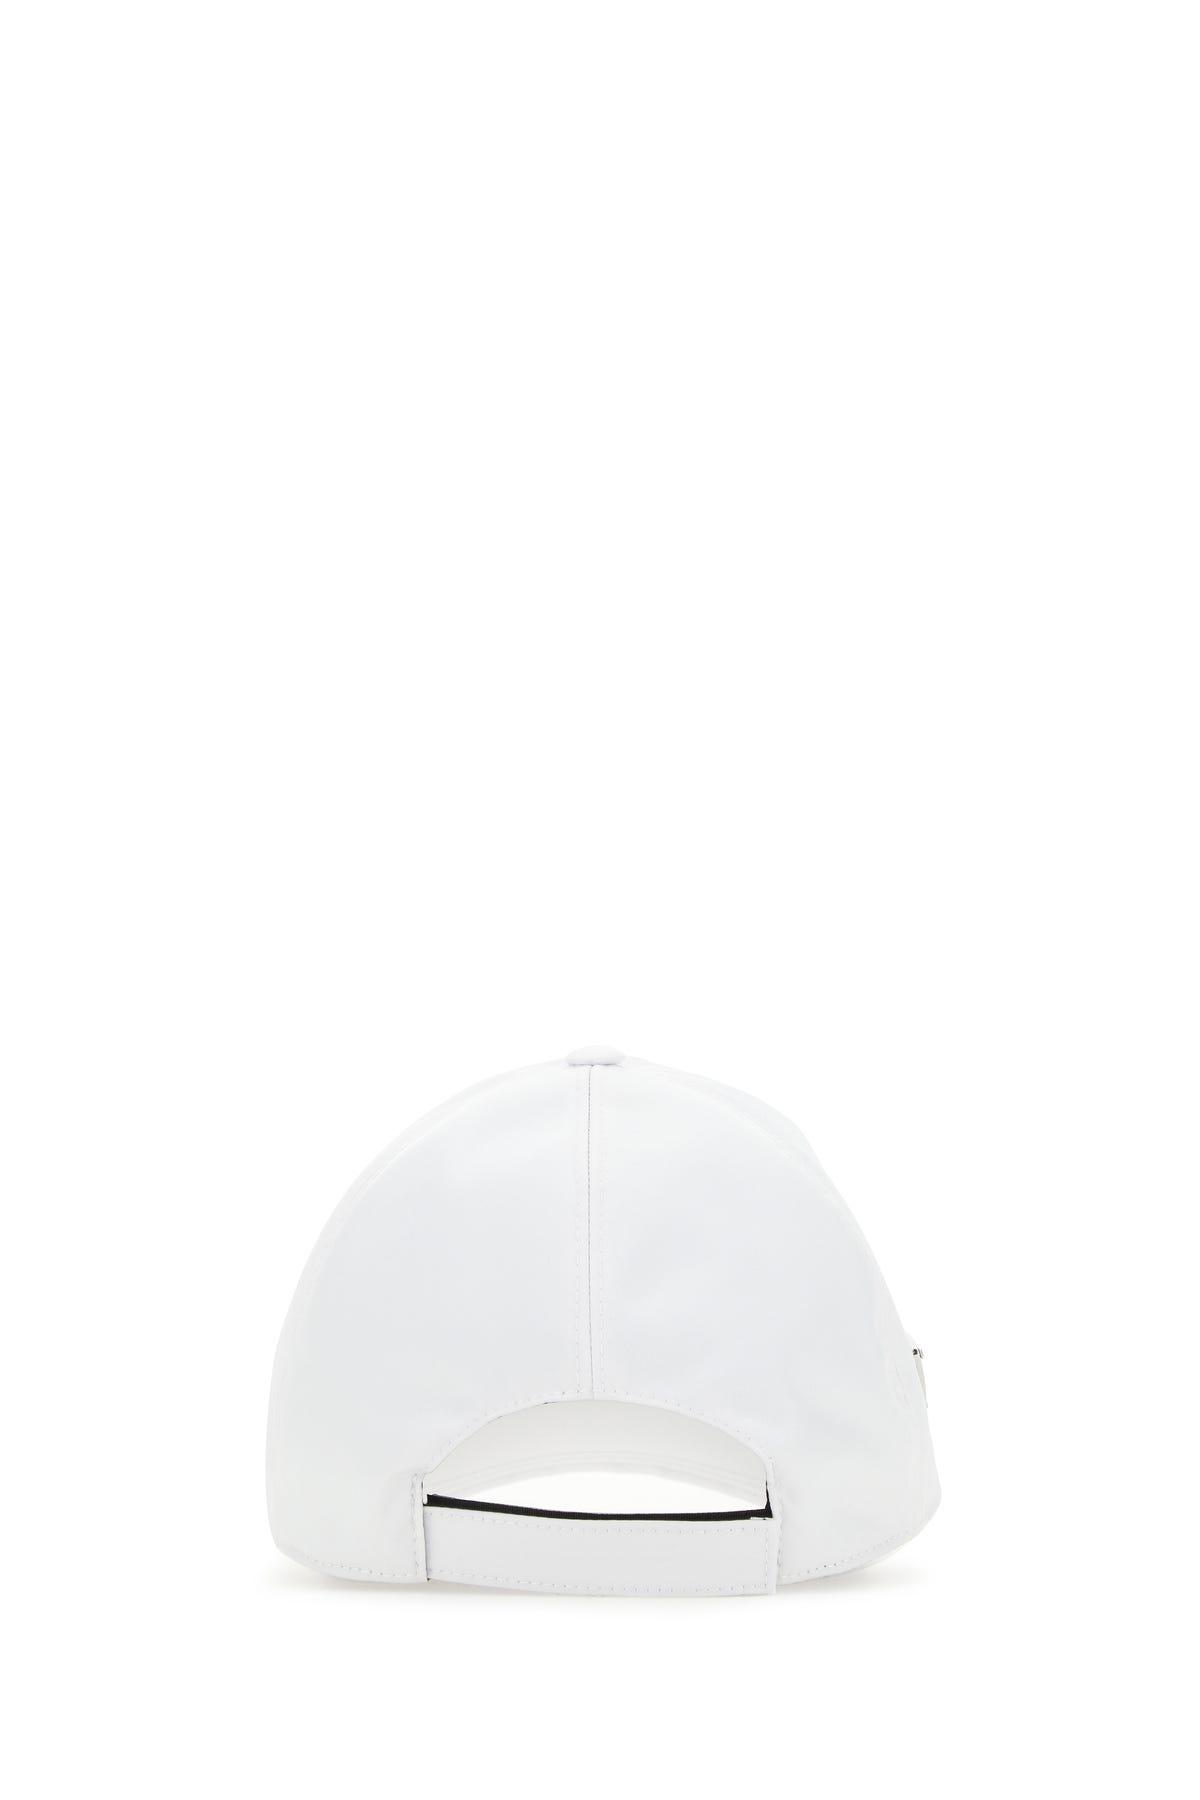 Prada Synthetic White Re-nylon Baseball Cap for Men - Lyst